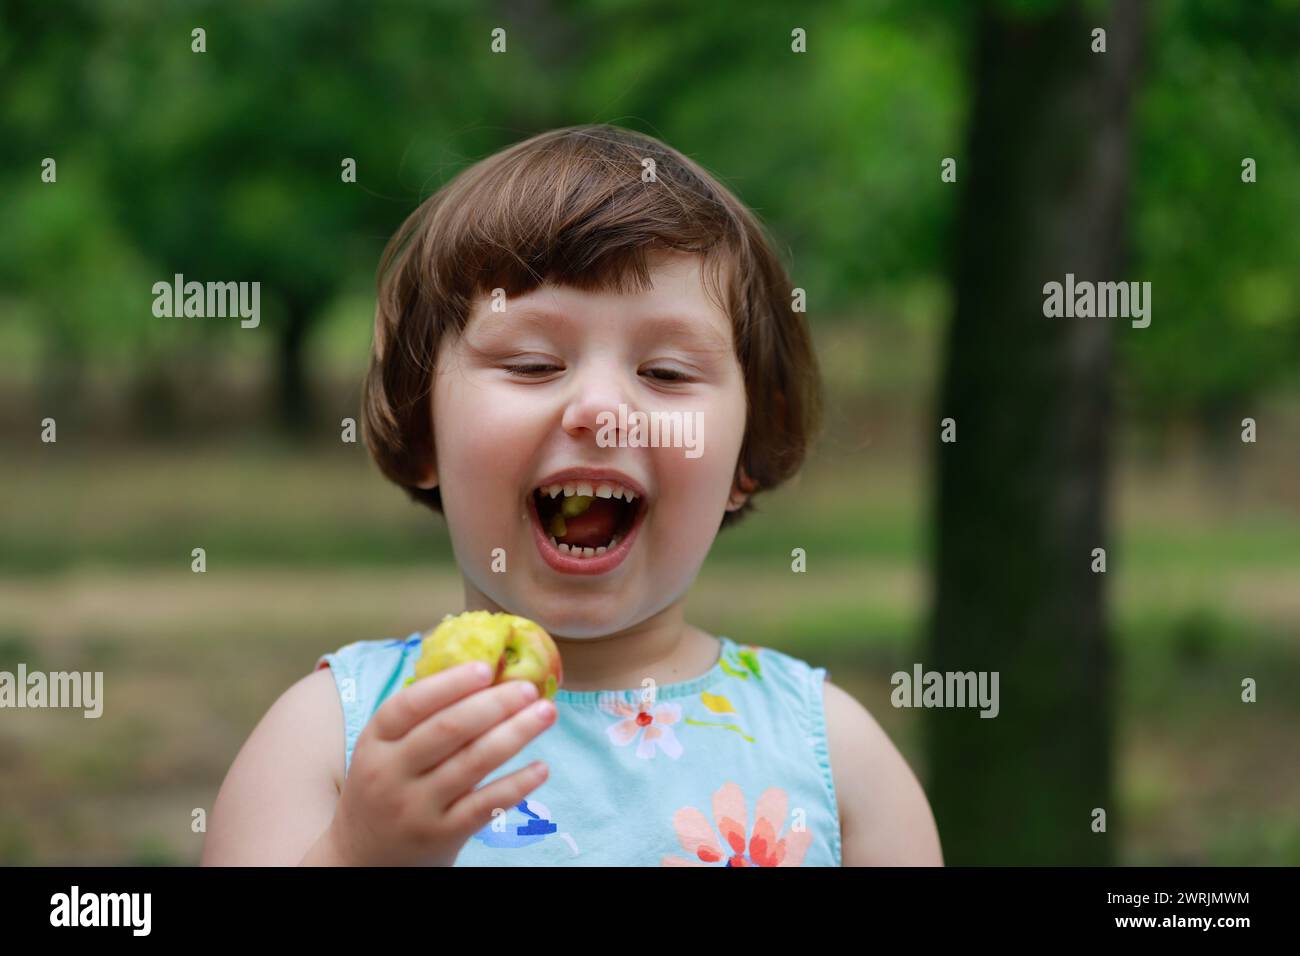 Niedliches kleines Mädchen, das unter Obstbäumen spielt, in Sommerkleid gekleidet. Verschwommene grüne Bäume im Hintergrund. Unter Obstbäumen spielen und Obst essen Stockfoto